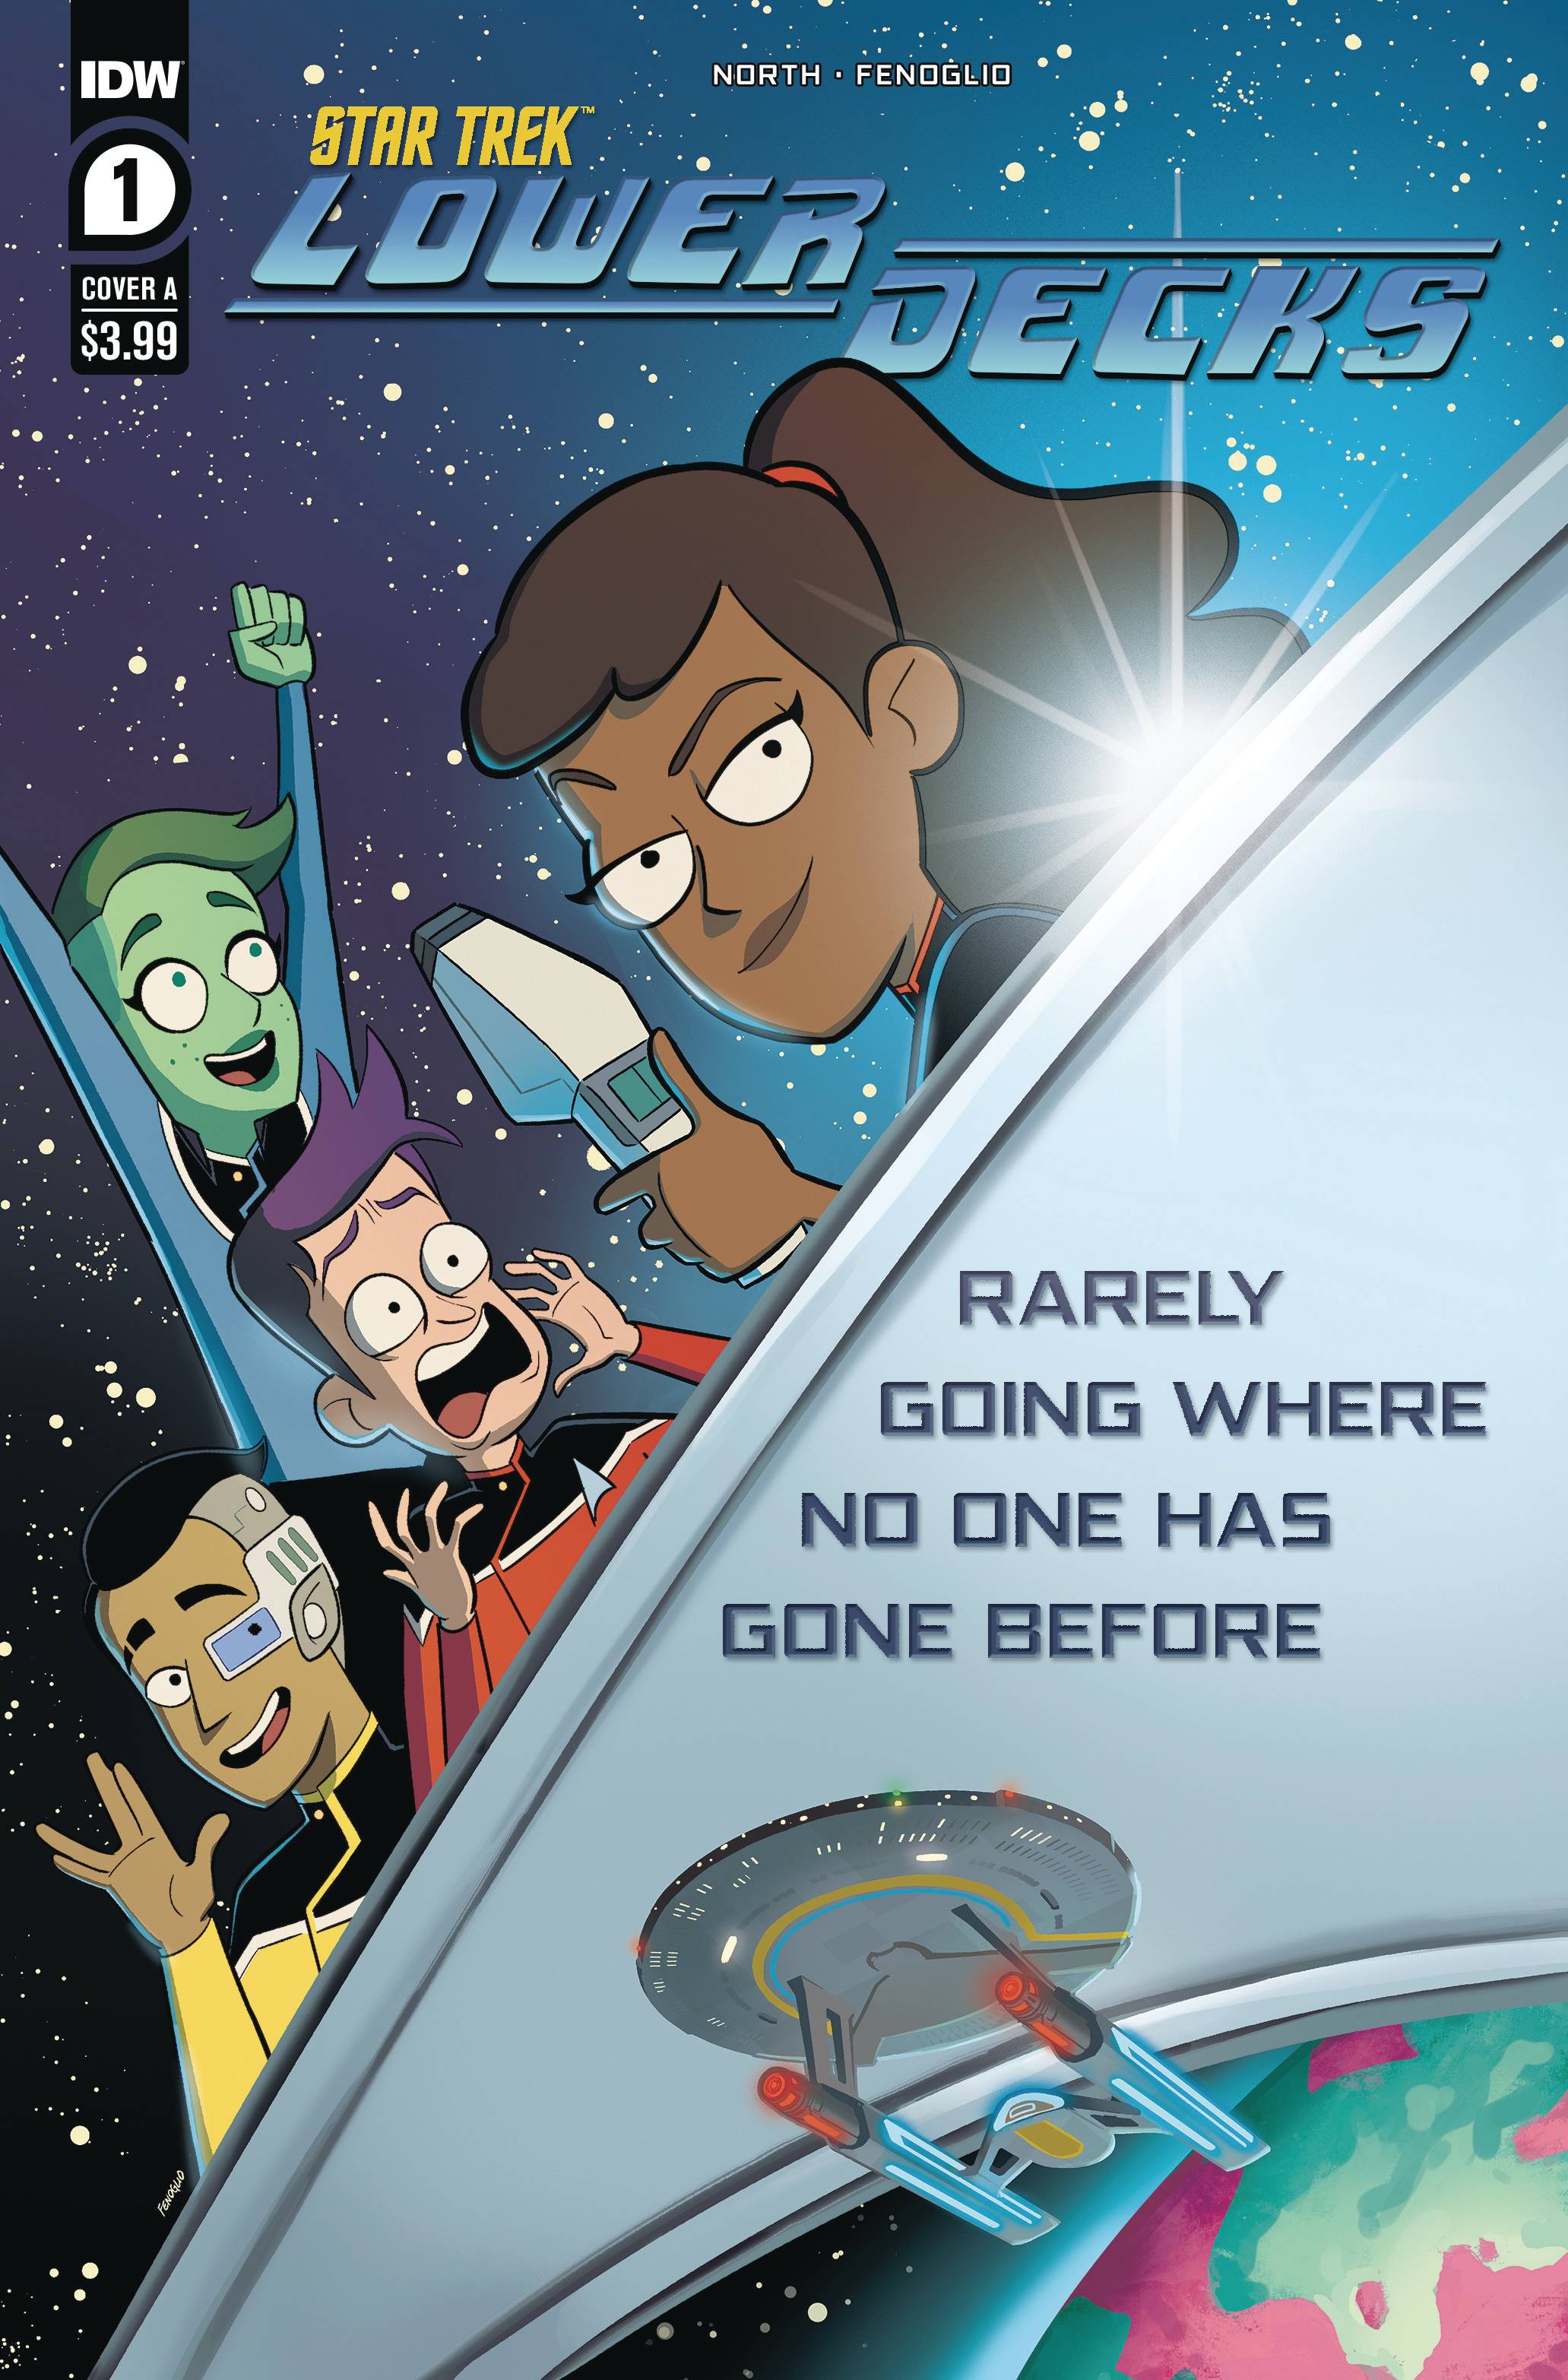 Full image of Star Trek: Lower Decks comics cover